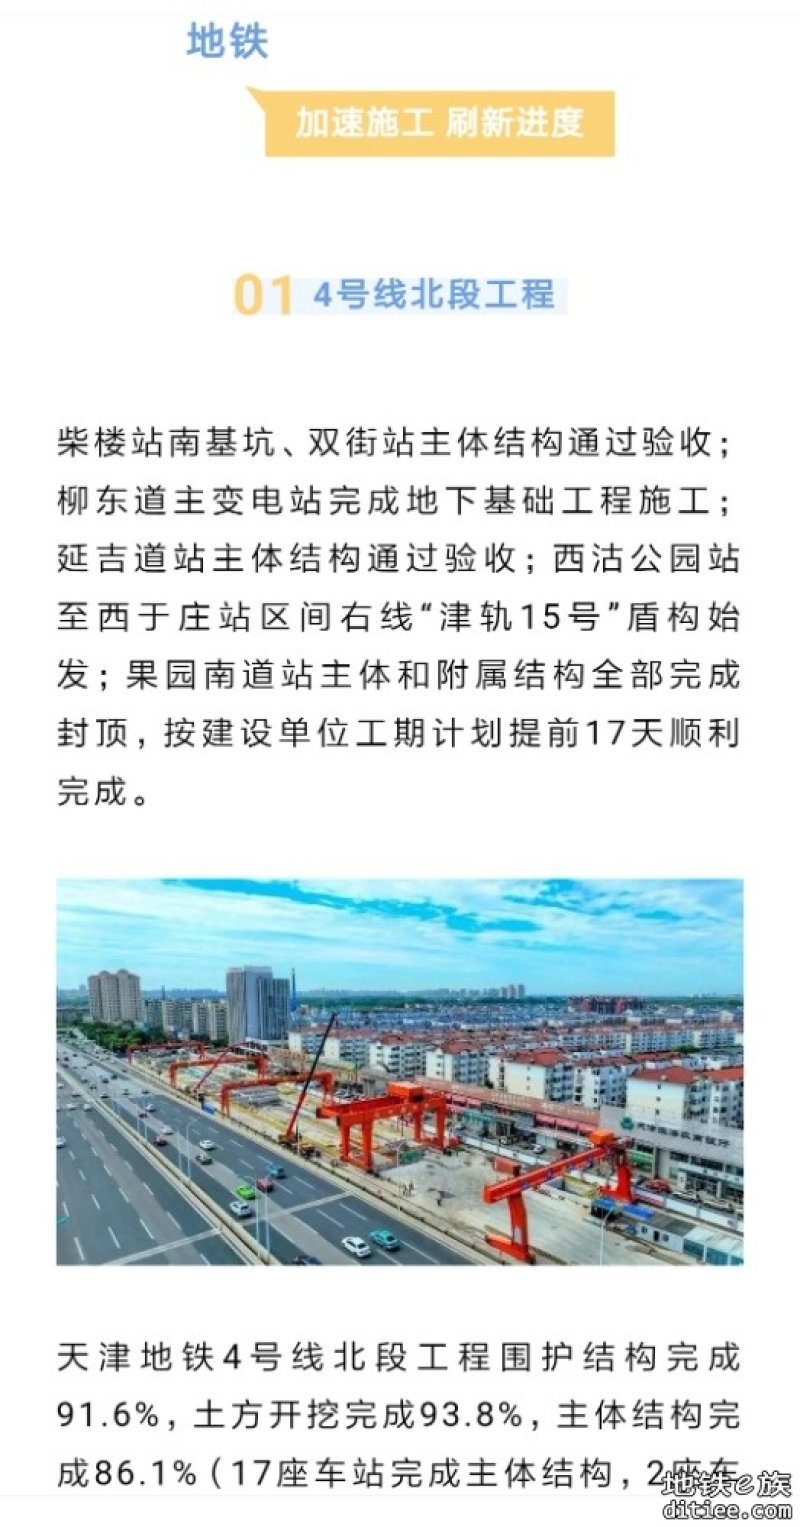 天津轨道交通建设最新进展